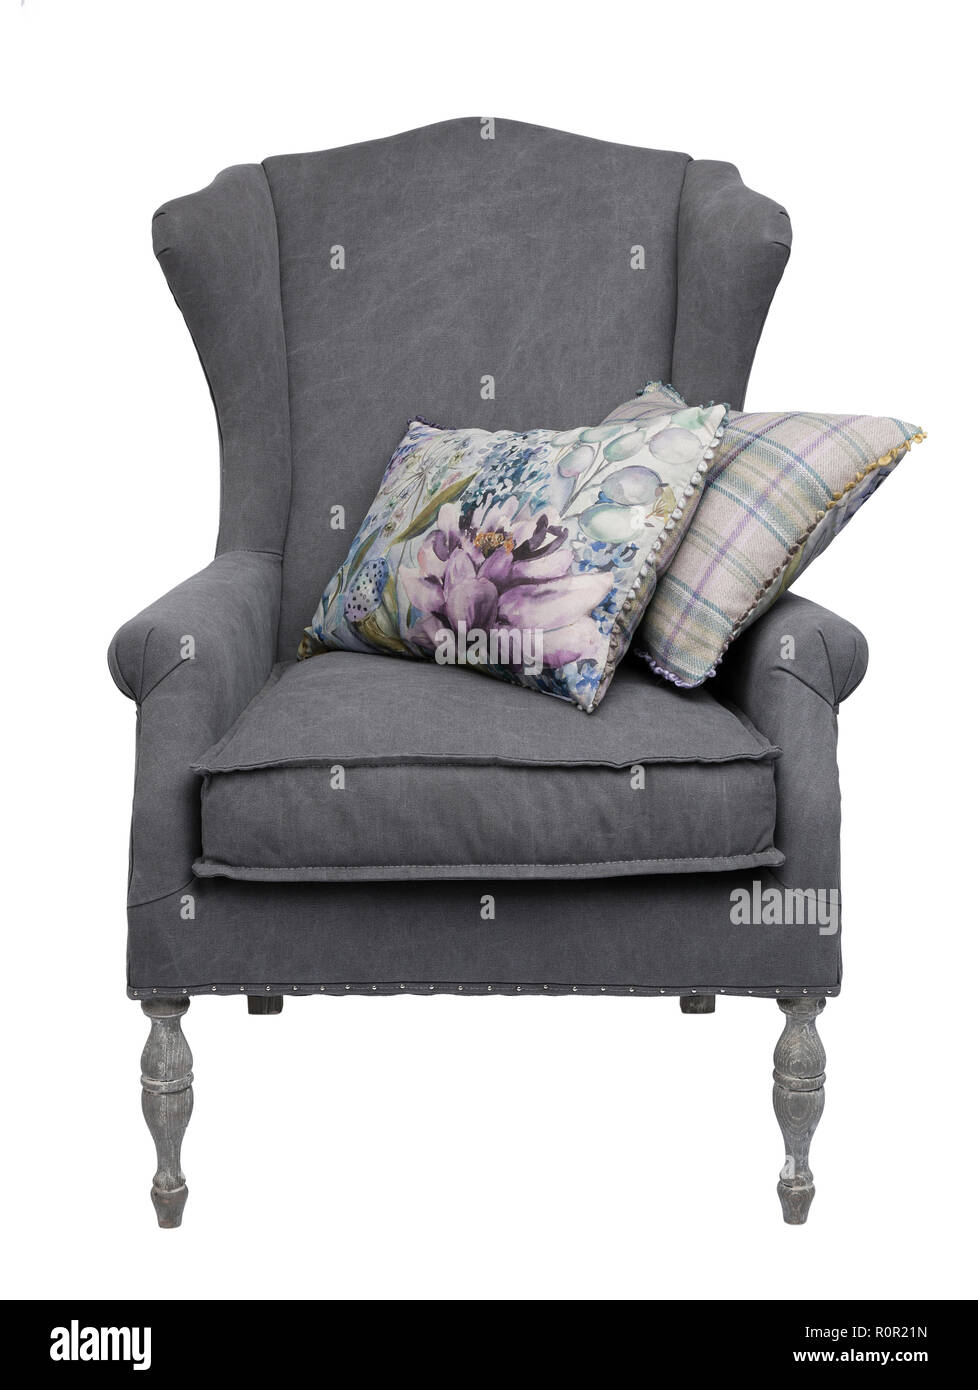 Traditionelle grau Sessel mit floralen und karierten Kissen, auf einem weißen Hintergrund. Stockfoto